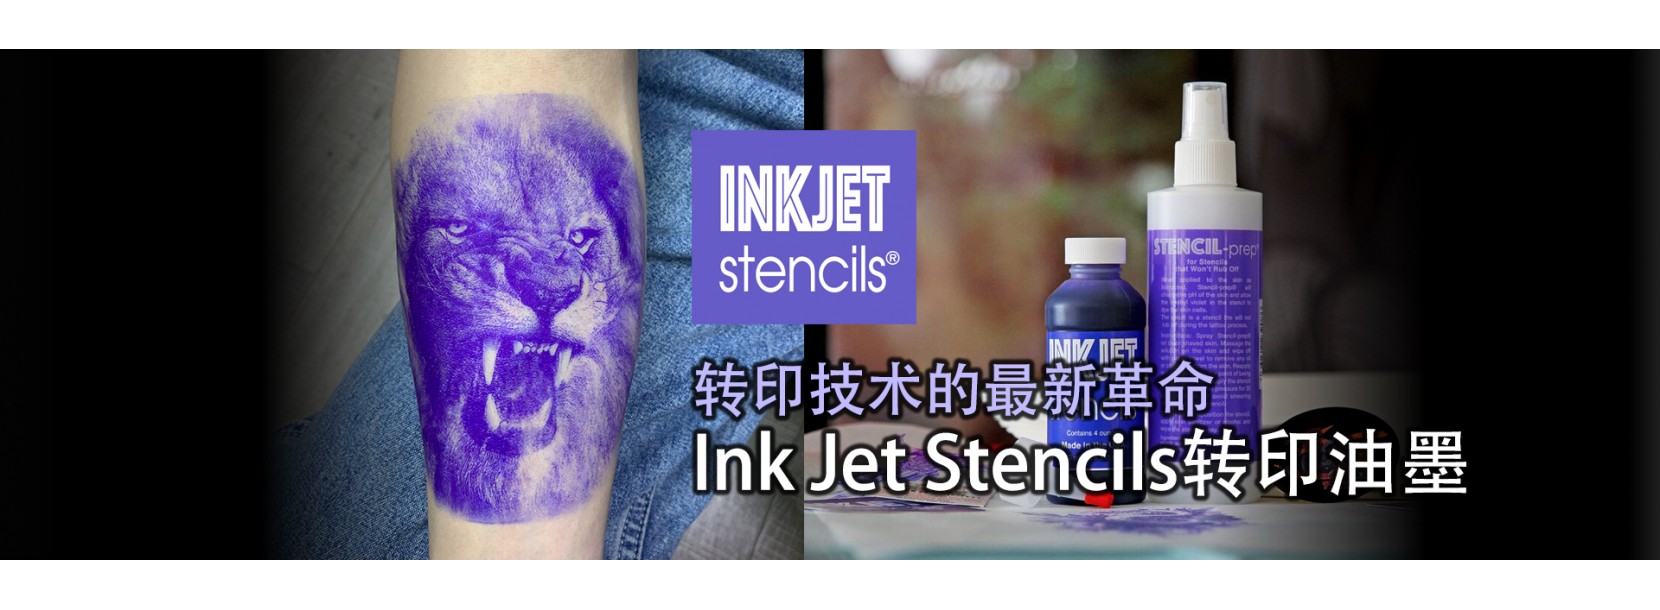 Stencil stuff - Sunskin Tattoo Equipment